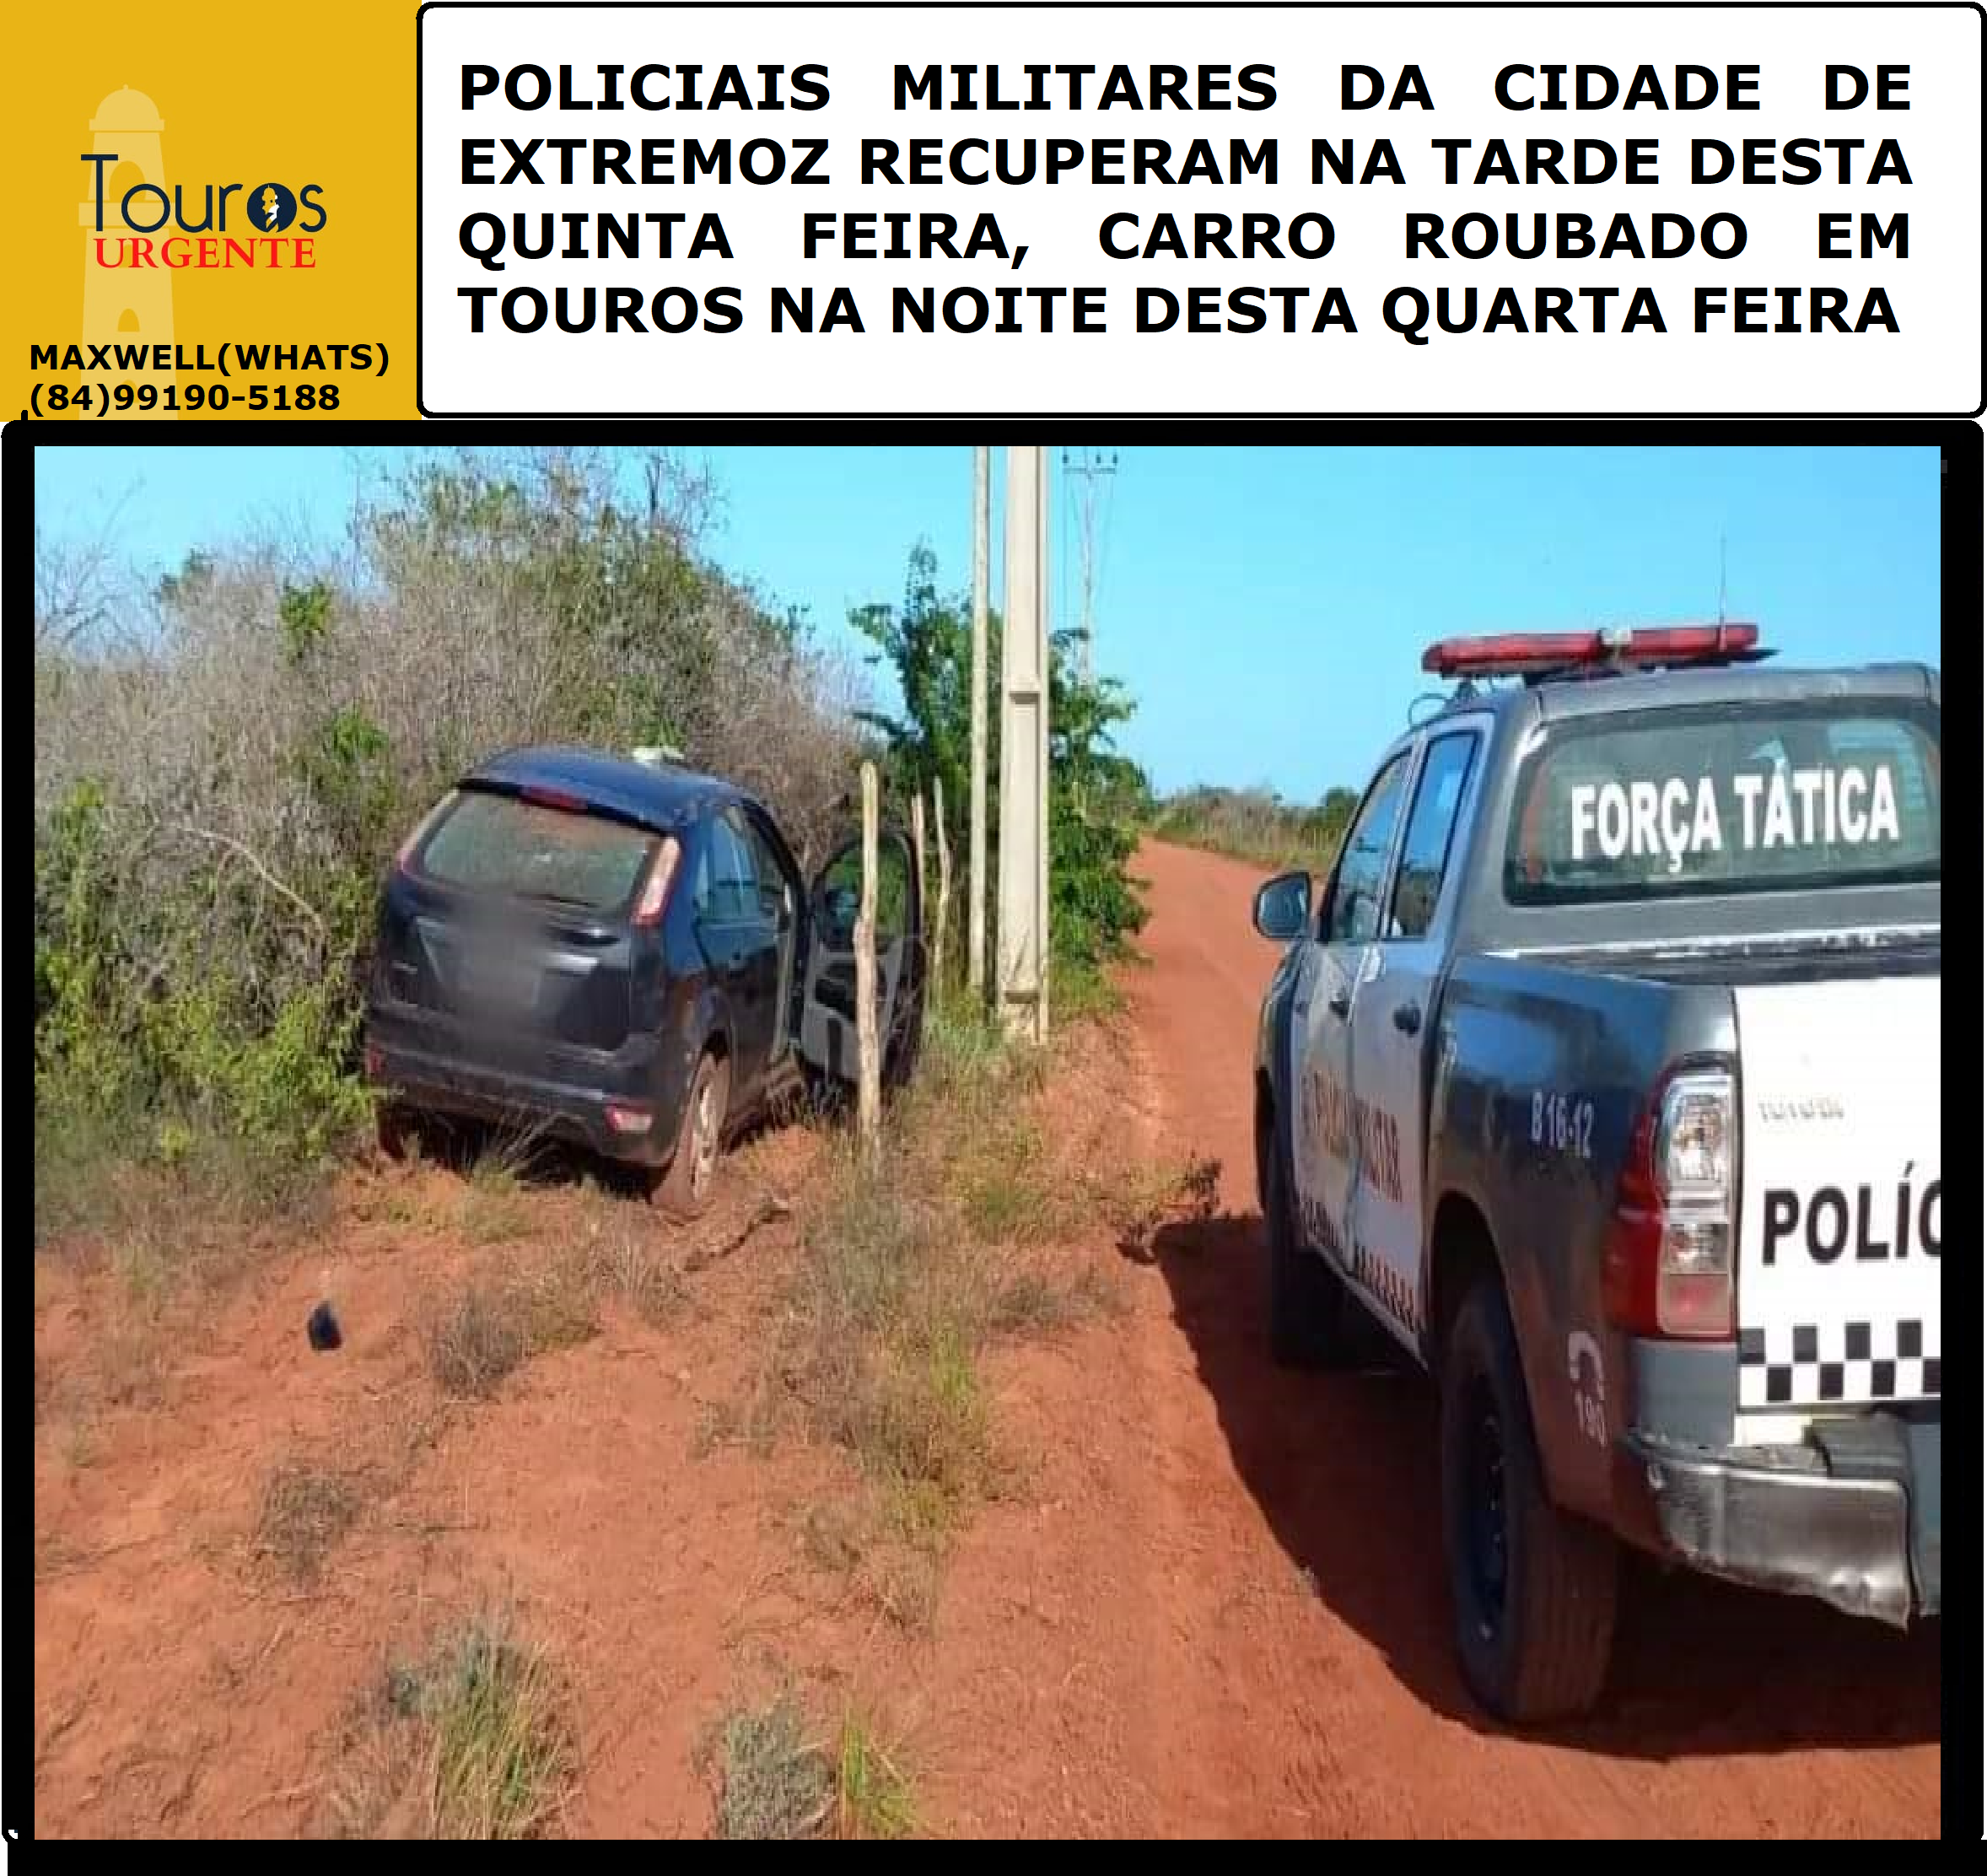 POLICIAIS MILITARES DA CIDADE DE EXTREMOZ RECUPERAM NA TARDE DESTA..